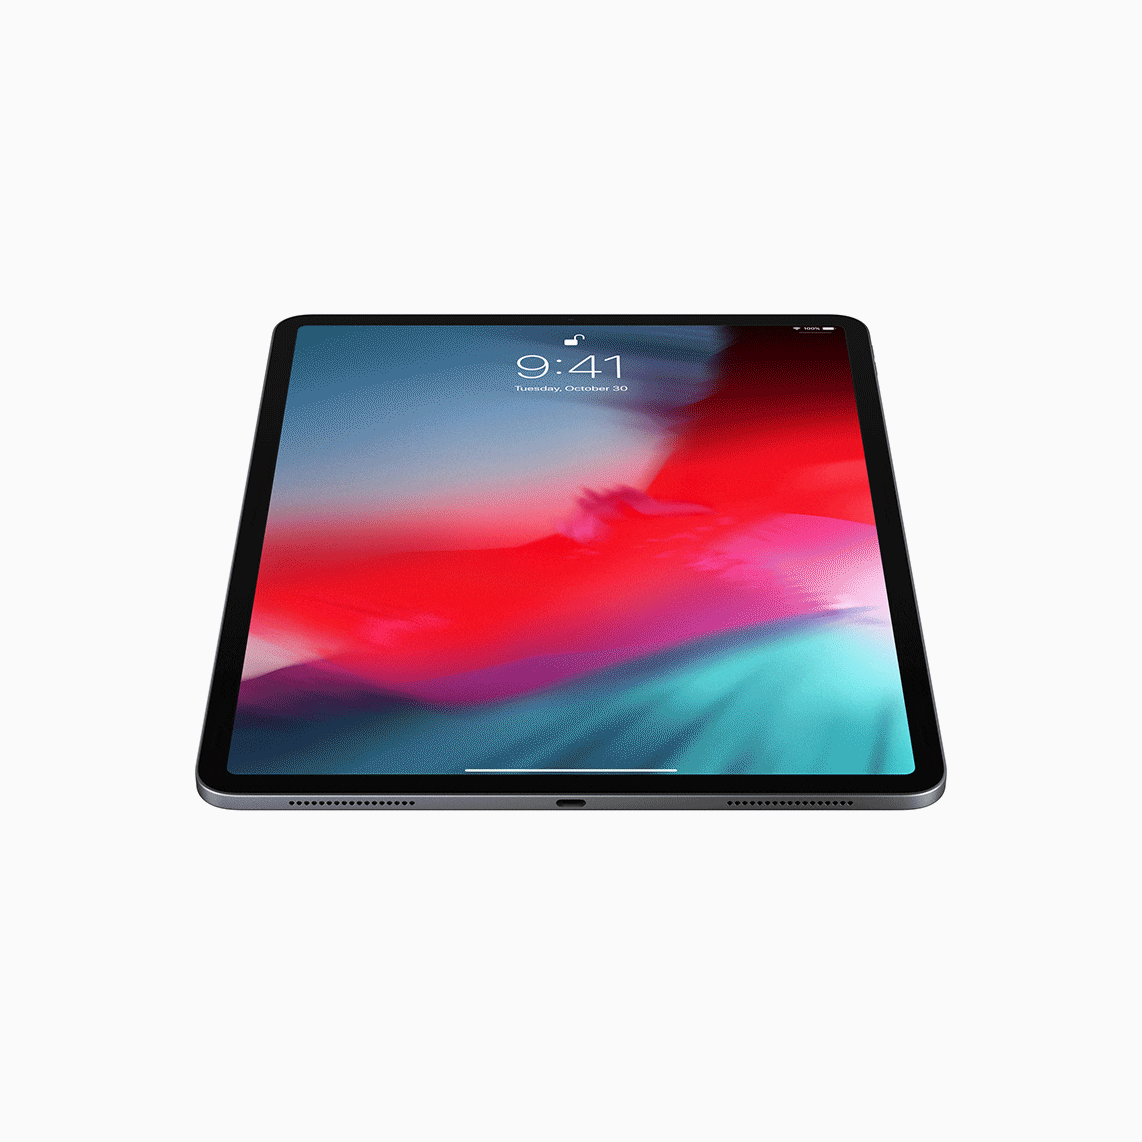 iPad Pro รุ่นปี 2018 ไร้ปุ่มโฮม, USB-C เปิดตัวอย่างเป็นทางการแล้ว